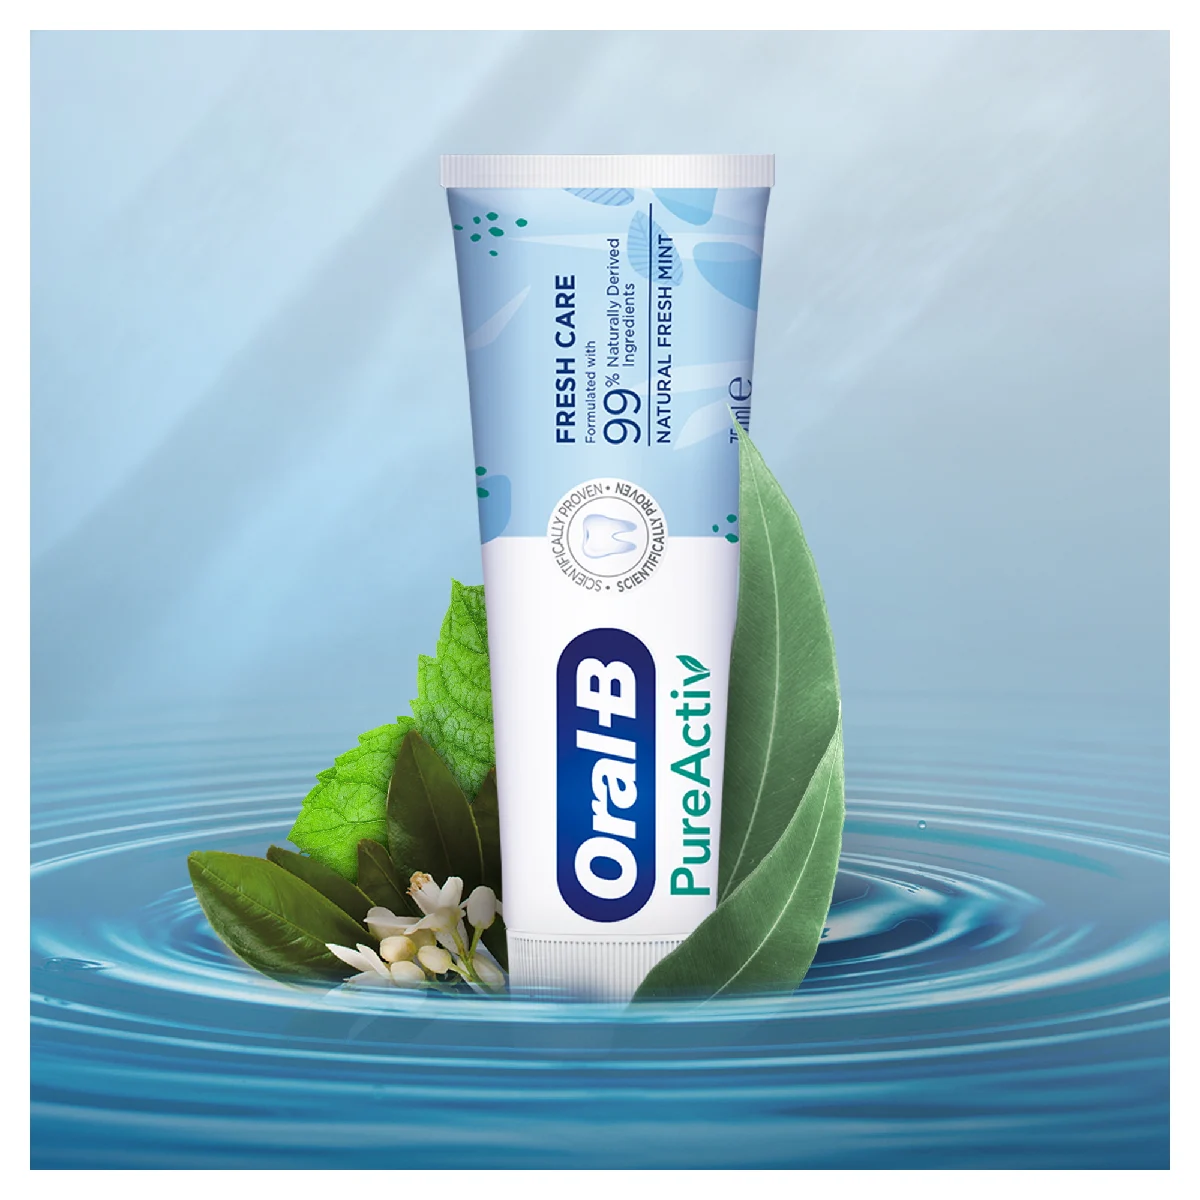 George Hanbury Menda City reputatie Oral-B PureActiv Freshness Care Tandpasta | Oral-B